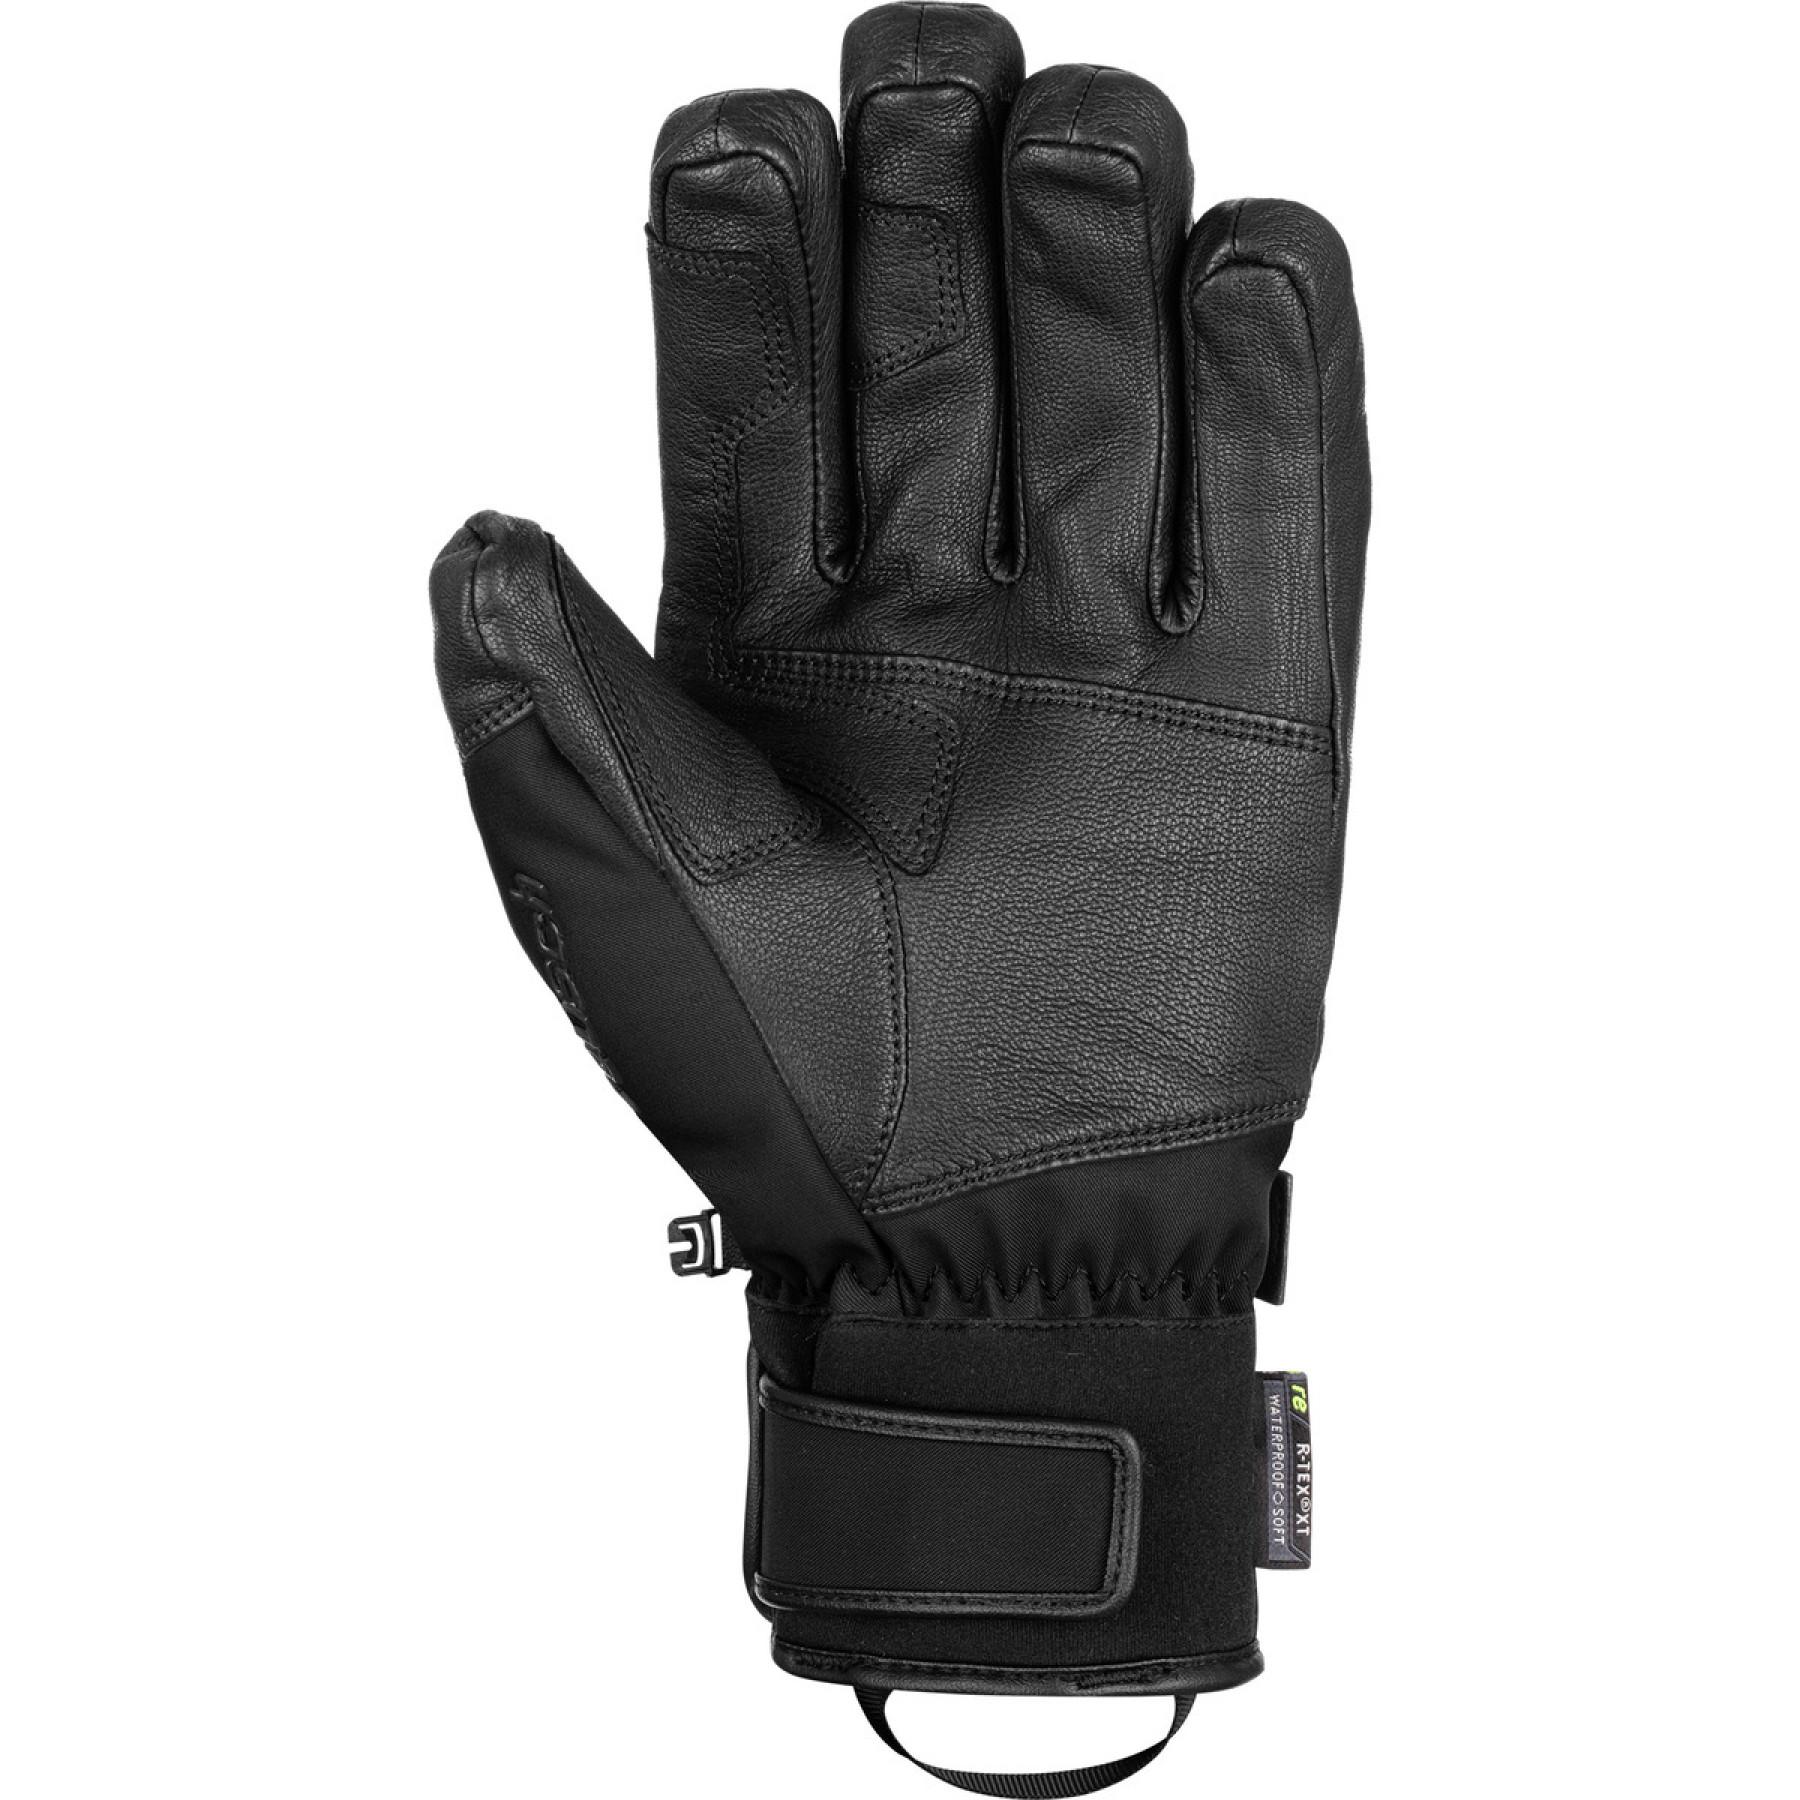 Handschuhe Reusch Explorer Pro R-tex® Xt Pcr Sc